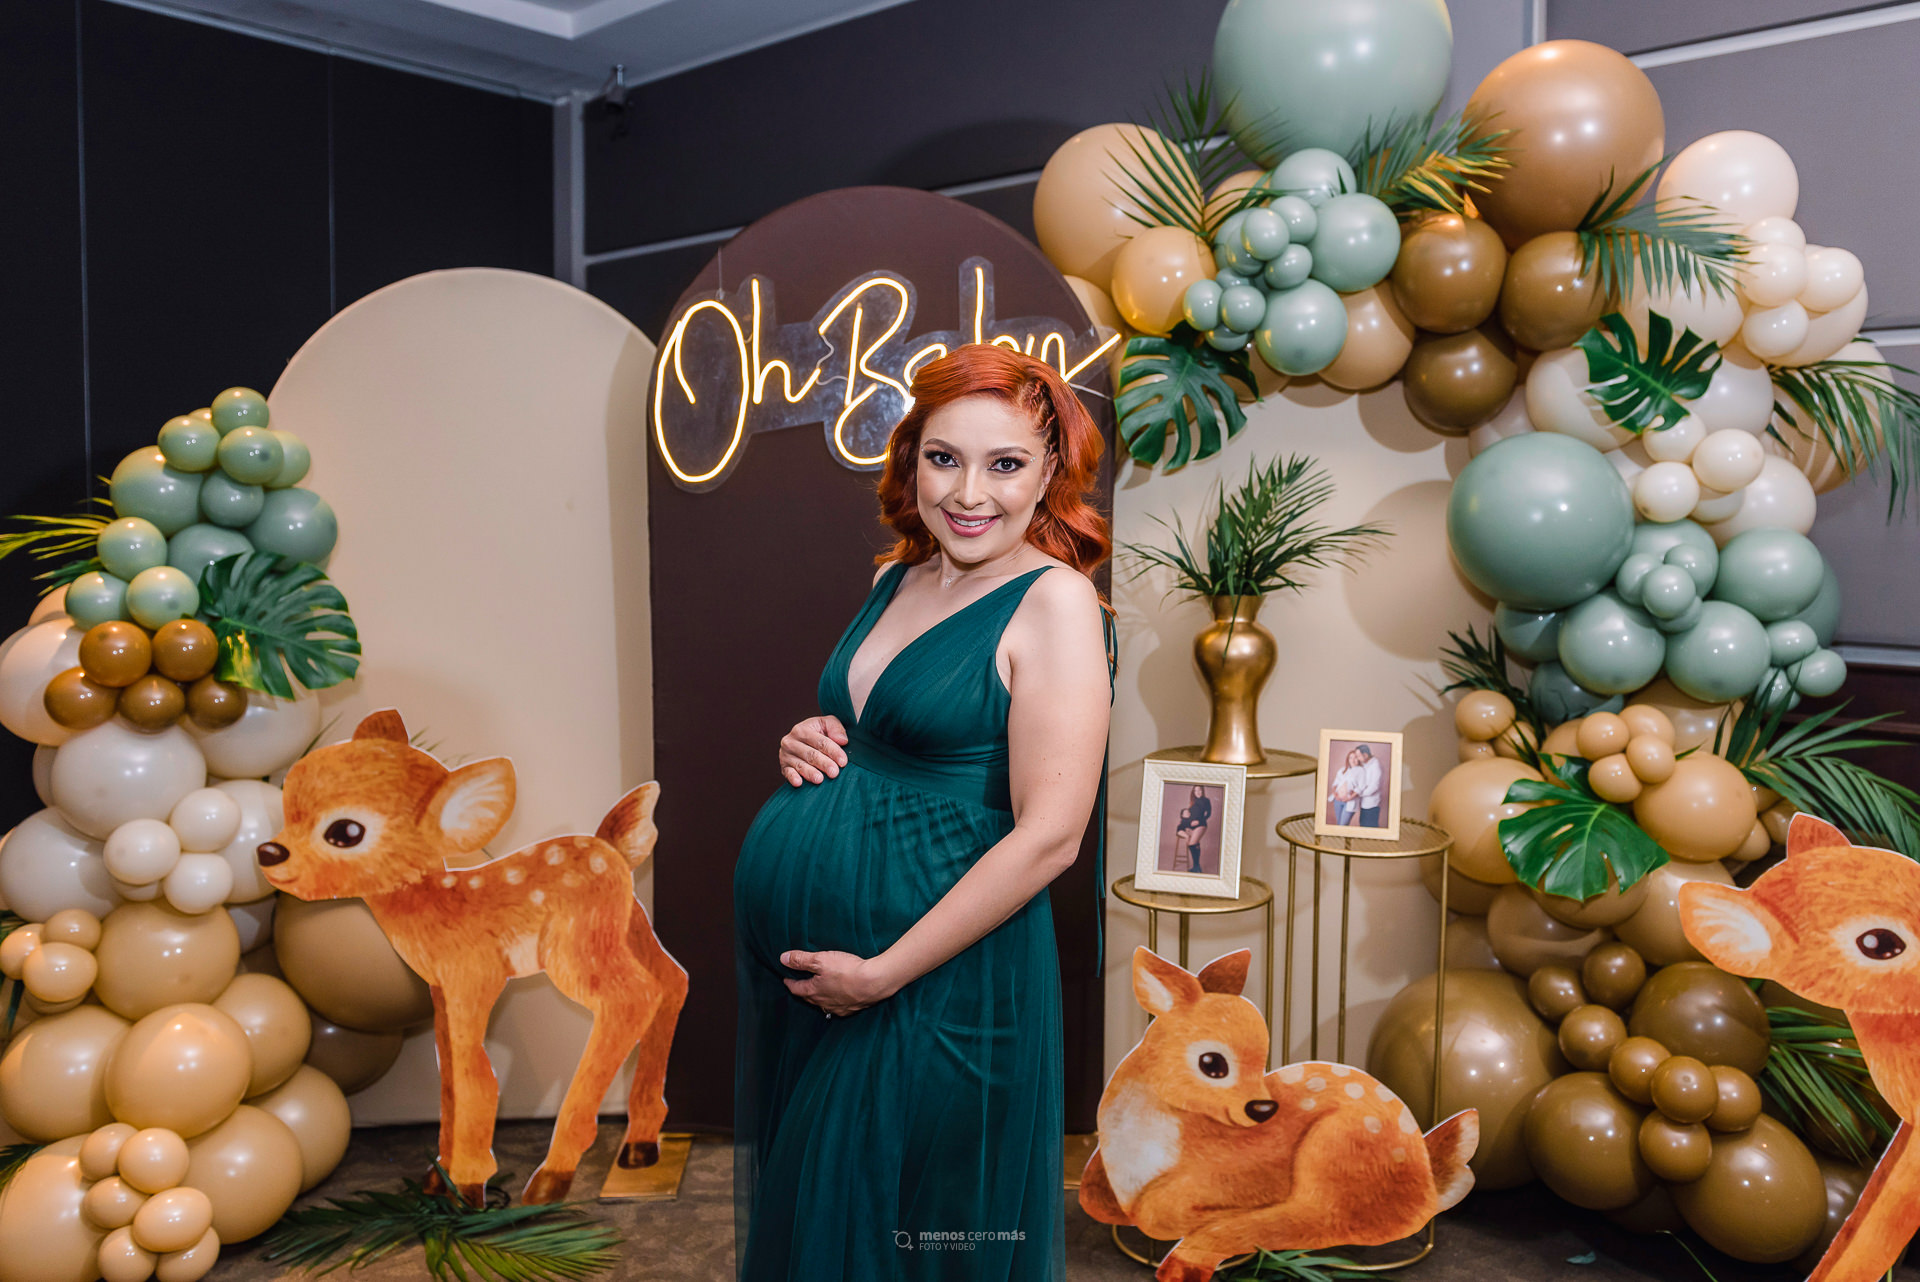 Fotografía de Tania en su babyshower en Windsor Eventos, con un vestido verde y una decoración de temática safari en tonos cafés y verdes, con globos y venados.